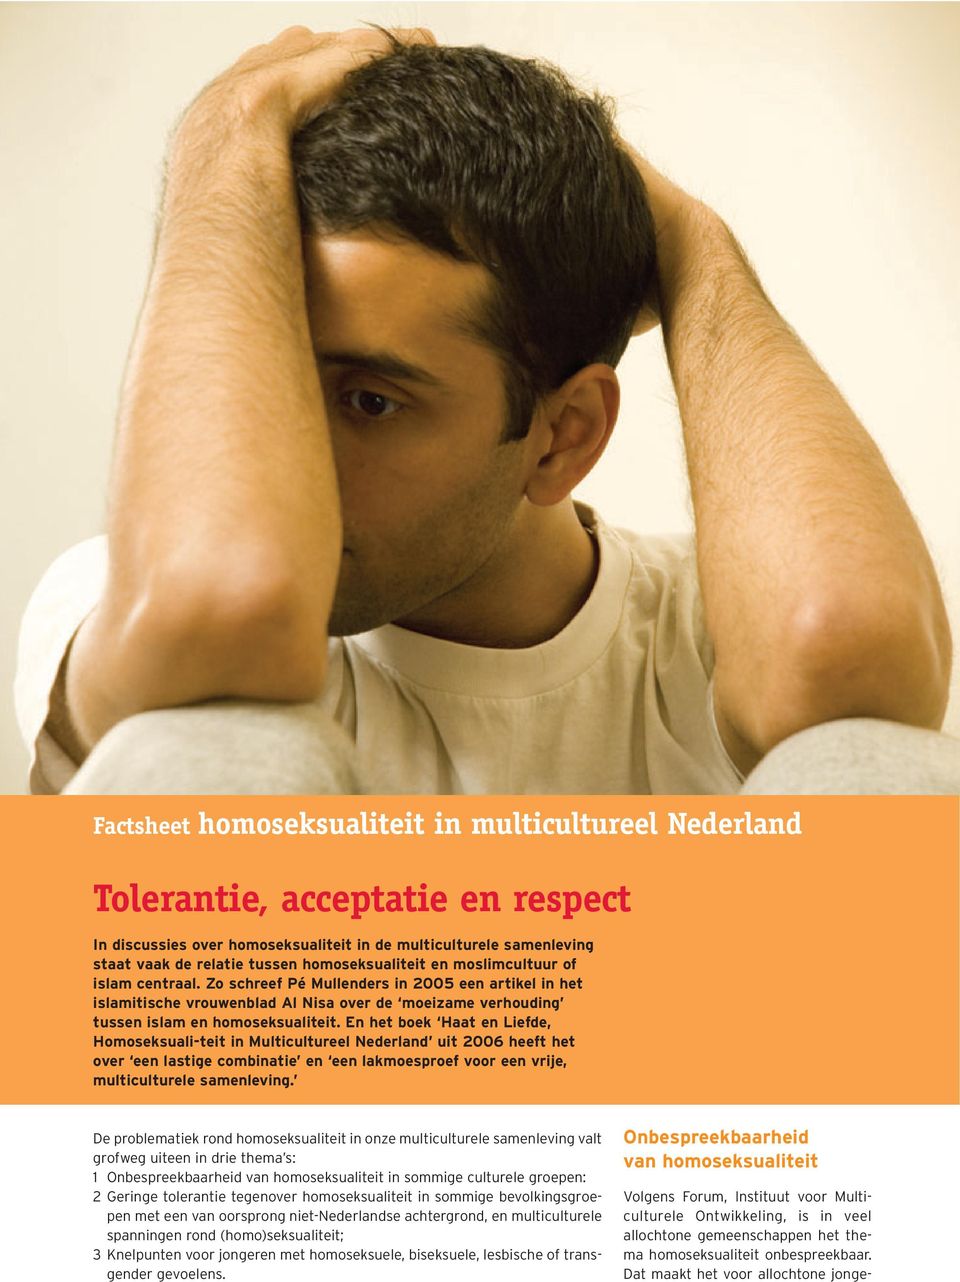 En het boek Haat en Liefde, Homoseksuali-teit in Multicultureel Nederland uit 2006 heeft het over een lastige combinatie en een lakmoesproef voor een vrije, multiculturele samenleving.